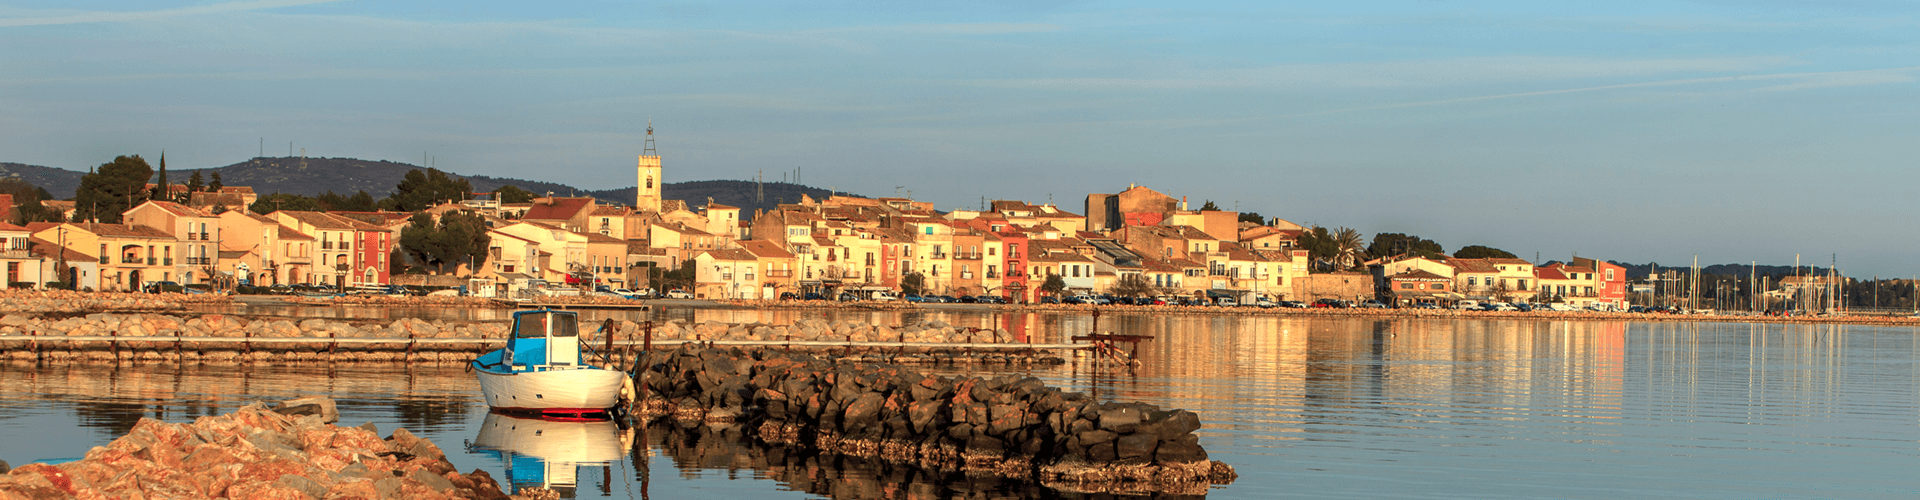 Steden en dorpen in Languedoc Roussillon: Bouzigues